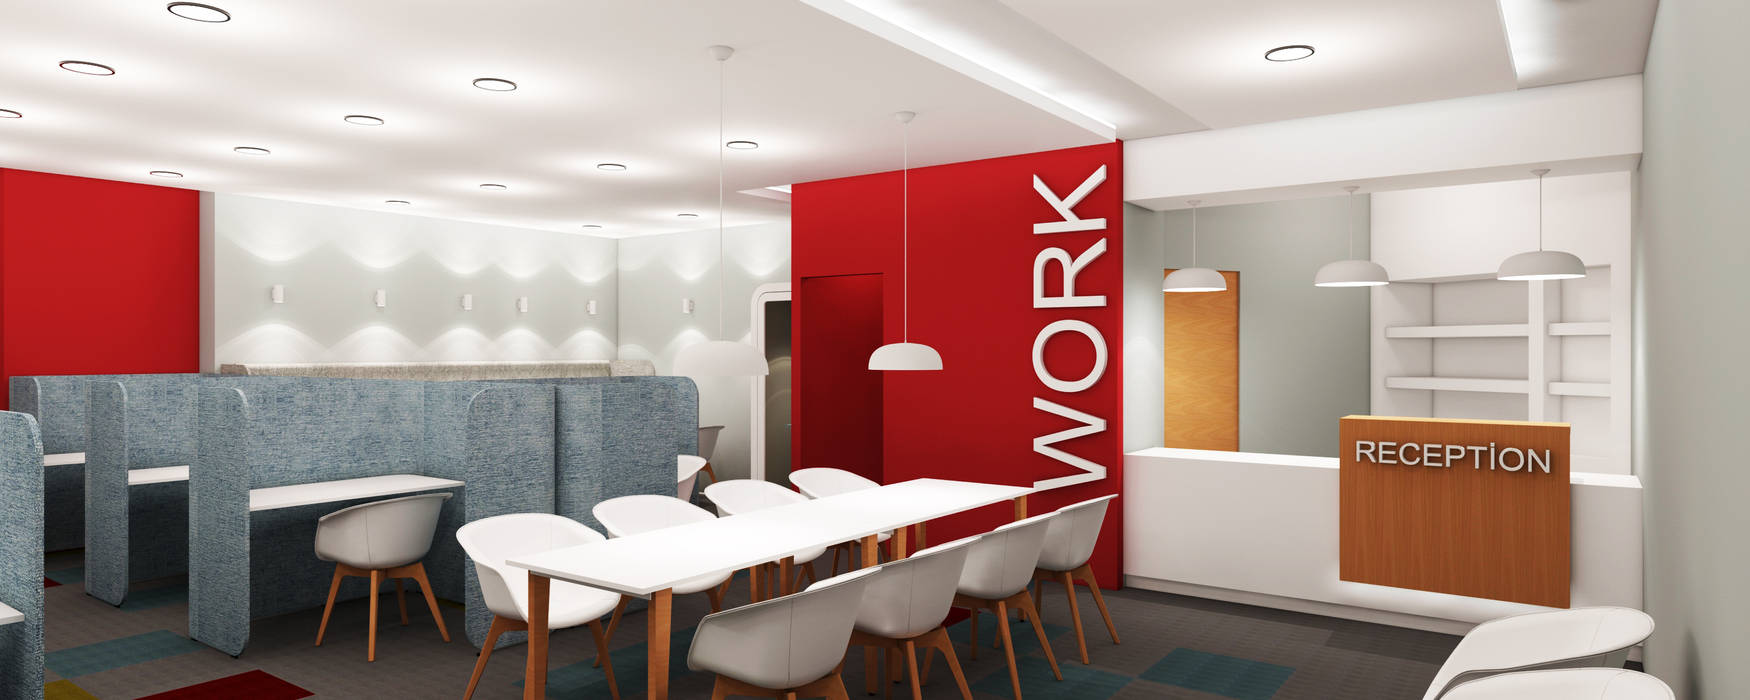 Work Hub, Sanal Mimarlık Hizmetleri Sanal Mimarlık Hizmetleri Ticari alanlar Ofis Alanları